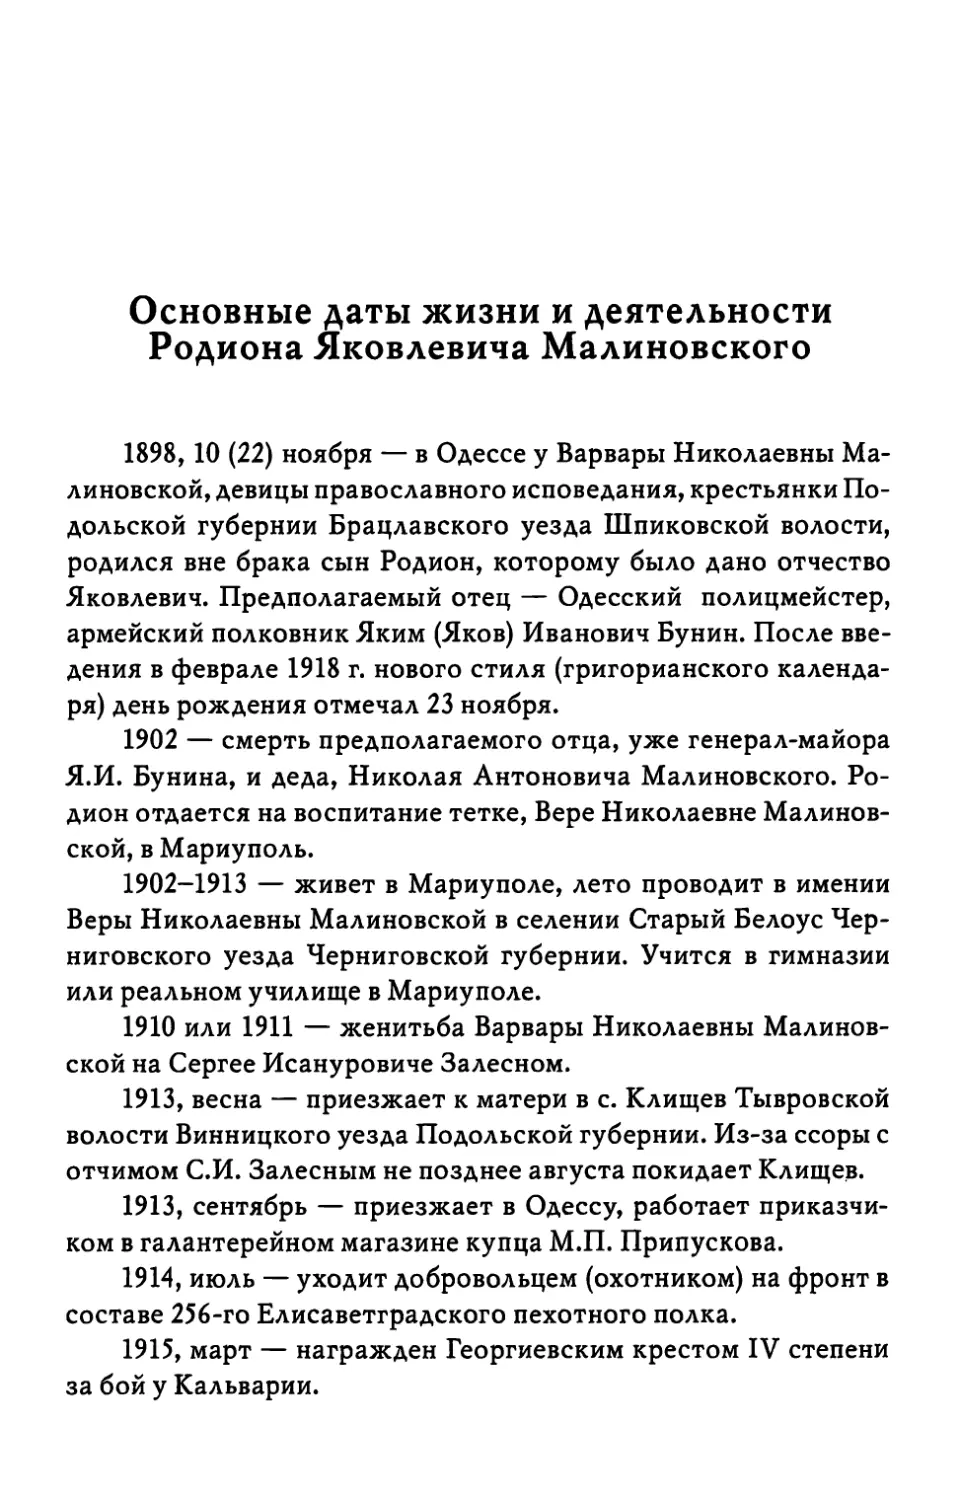 Основные даты жизни и деятельности Родиона Яковлевича Малиновского